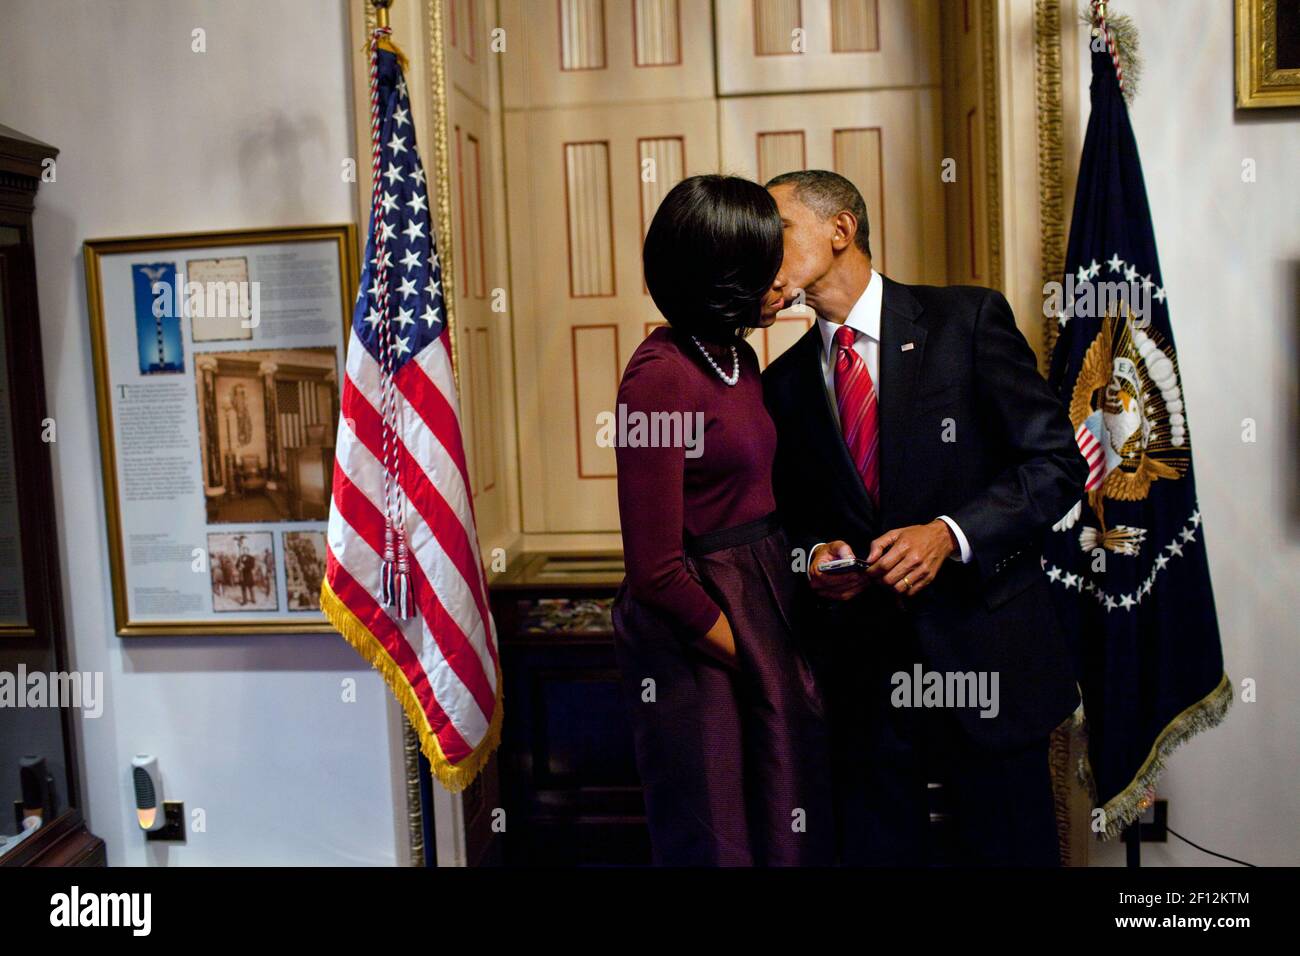 Le président Barack Obama embrasse la première dame Michelle Obama dans une salle d'attente au Capitole après avoir donné son premier discours sur l'état de l'Union à une session conjointe du Congrès le 27 2010 janvier. Banque D'Images